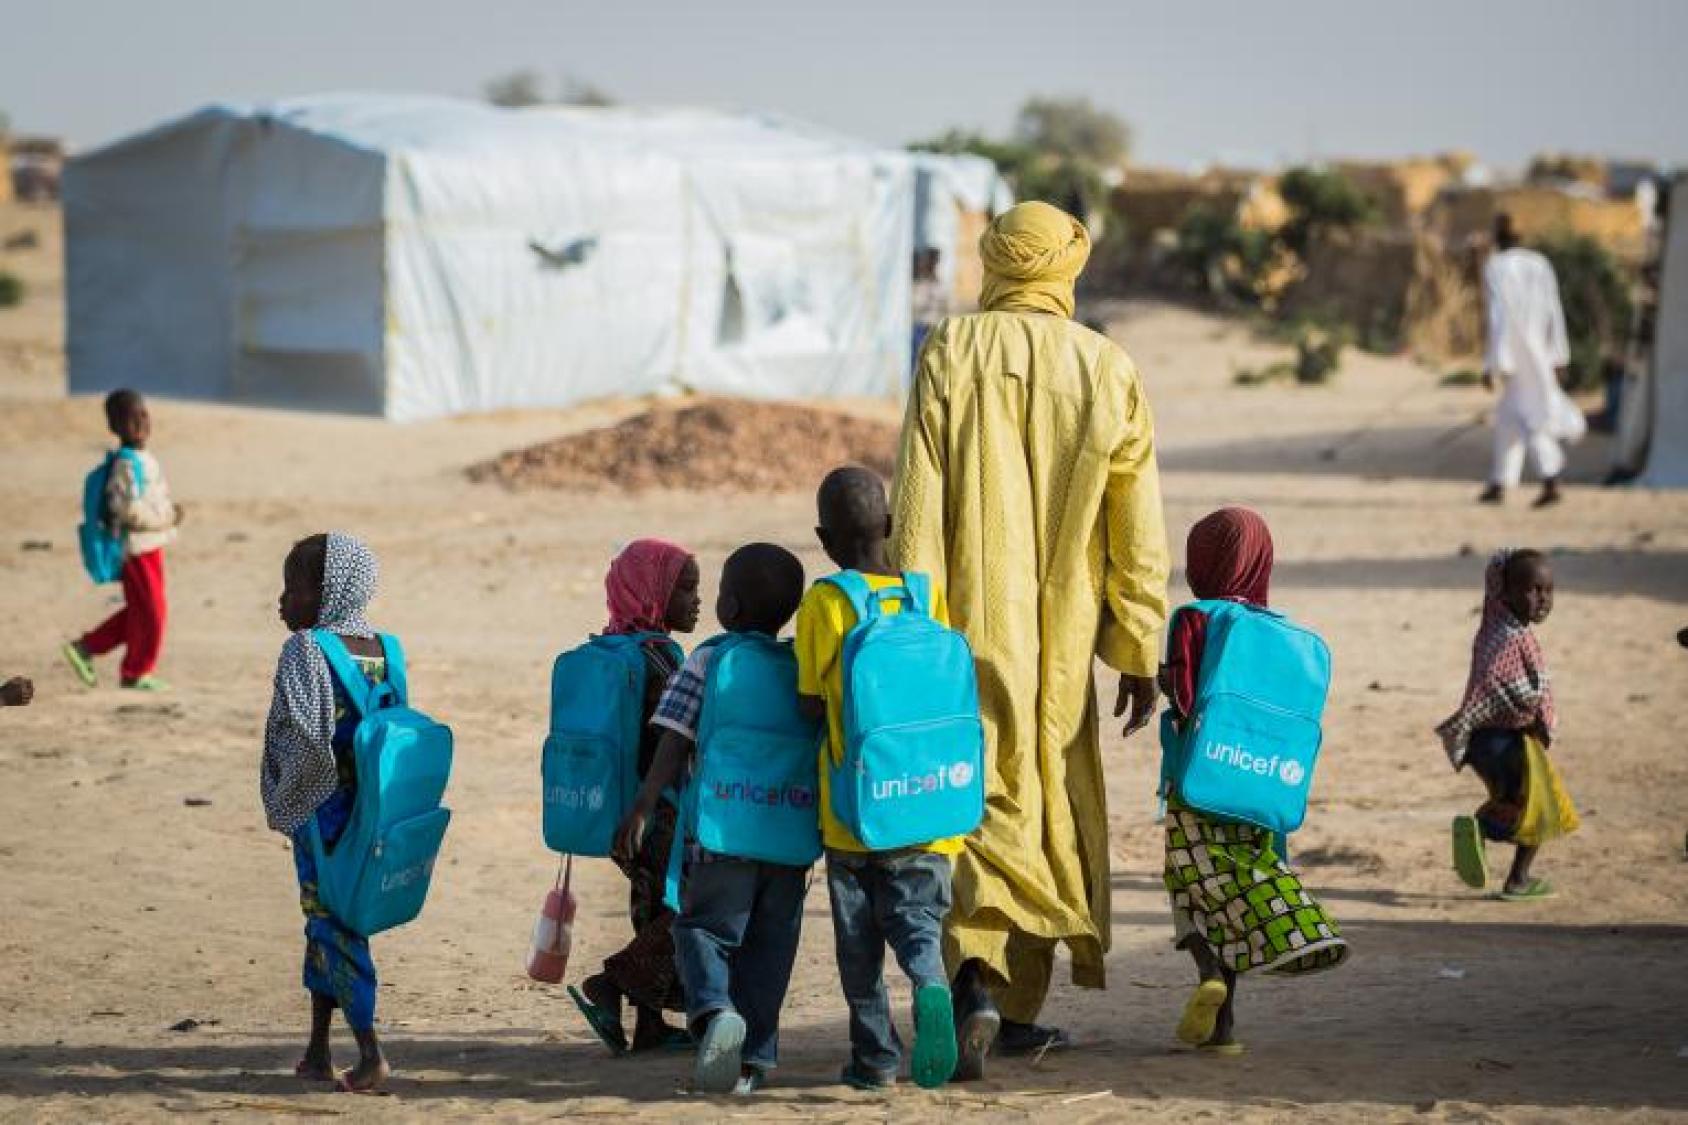 Un grupo de niños y niñas llevan mochilas azules de UNICEF mientras caminan con un adulto cerca de las tiendas de campaña.